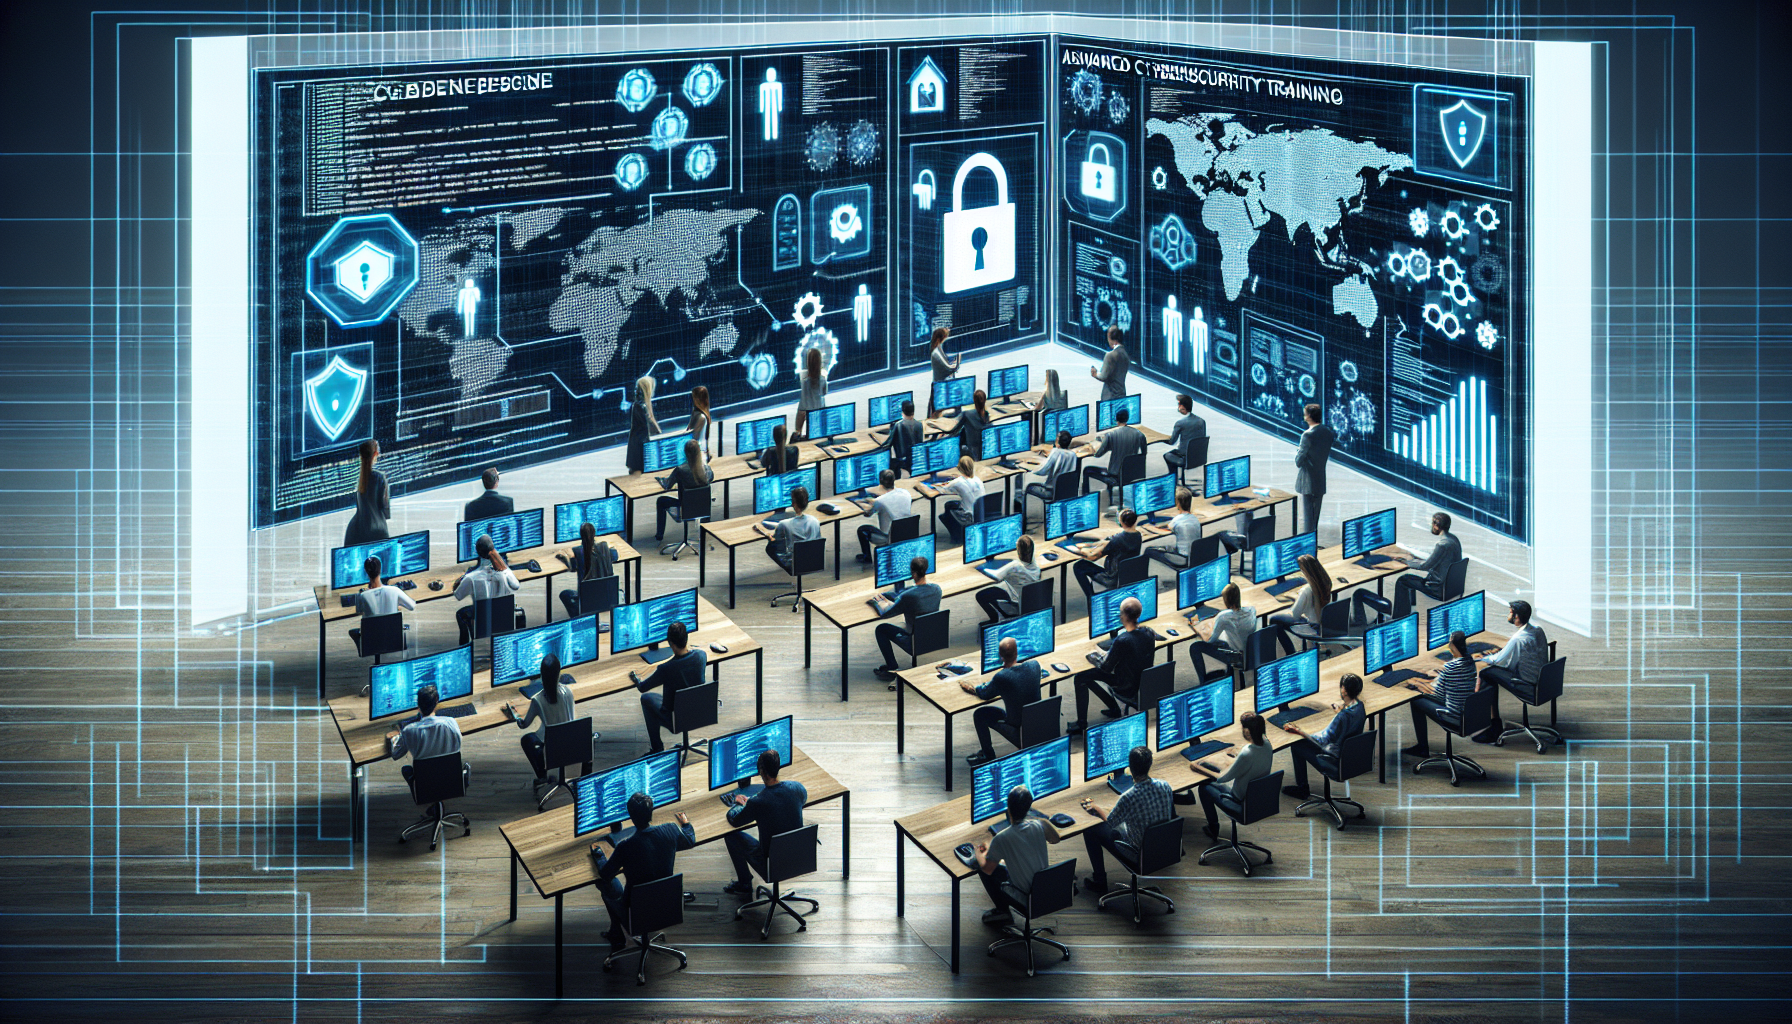 découvrez notre formation avancée en cybersécurité pour maîtriser les outils et techniques de défense contre les cybermenaces. obtenez des compétences précieuses en sécurité informatique pour protéger efficacement les données de votre organisation.